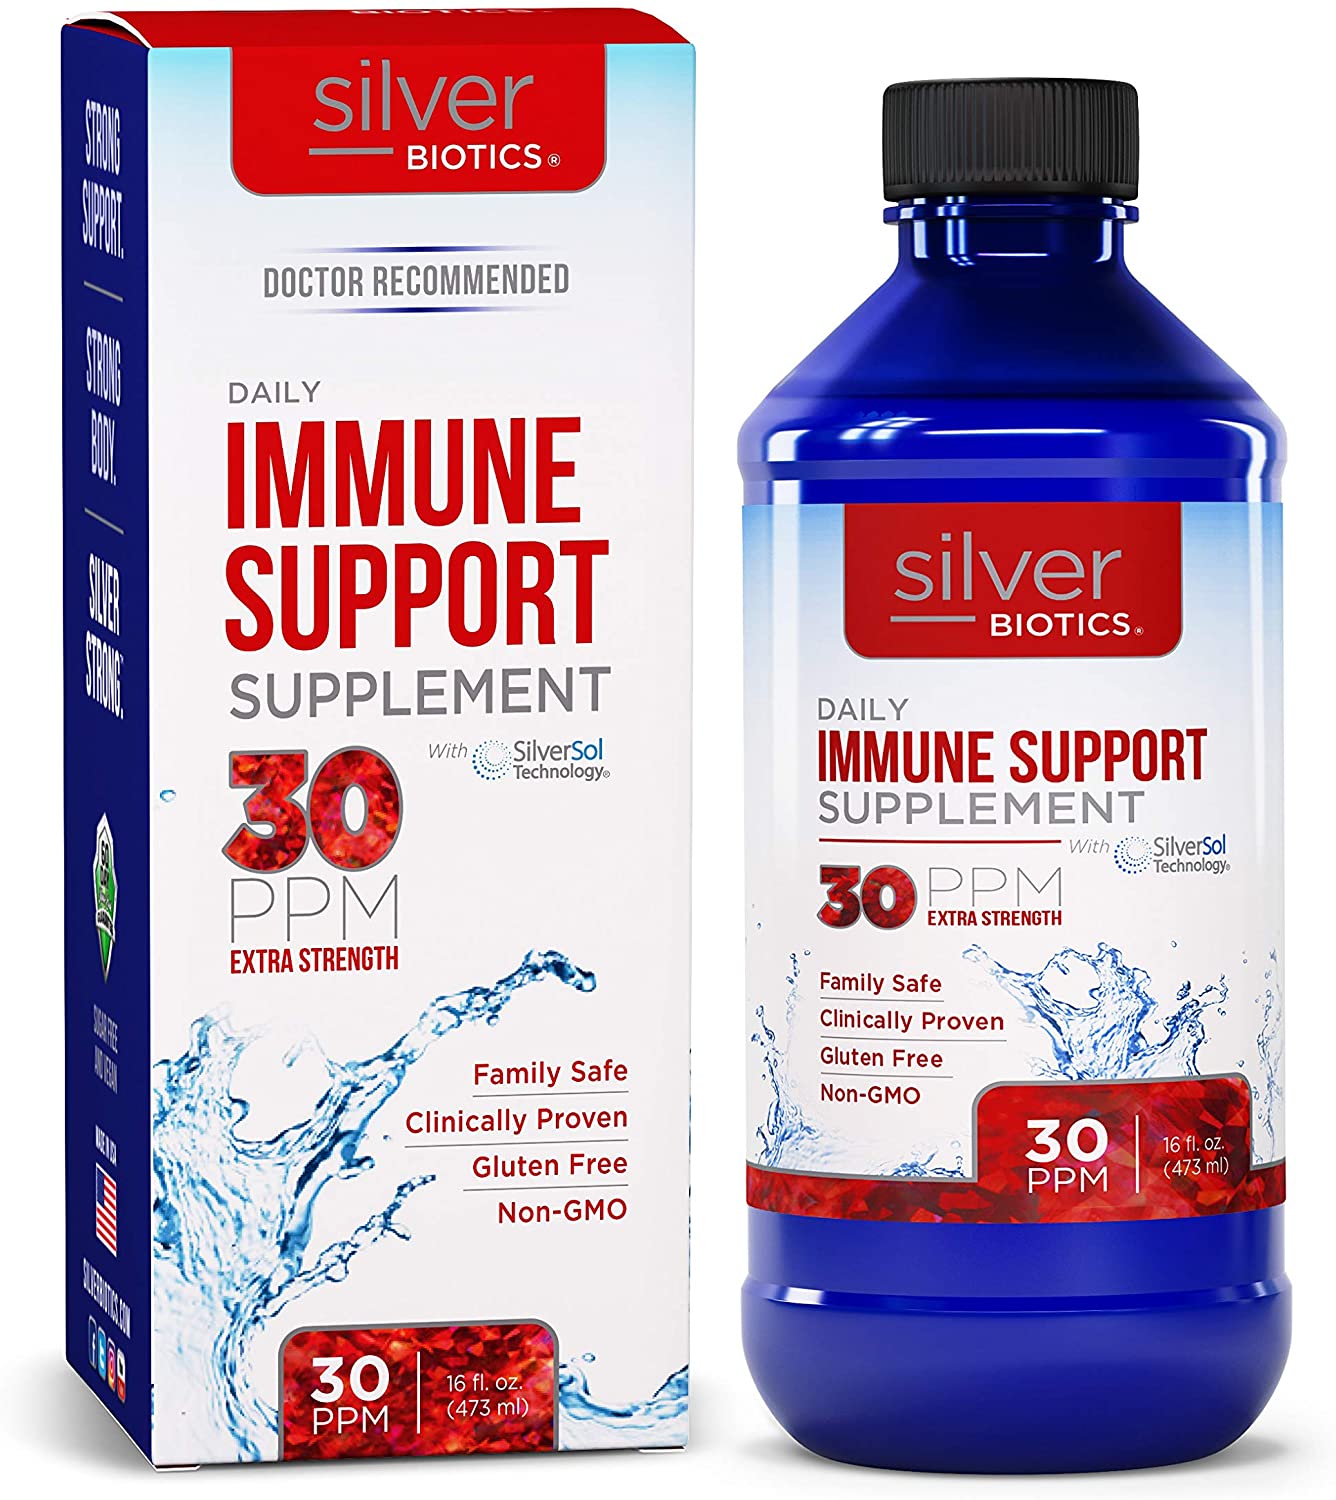 Silver Biotics mmune Support Supplement Extra Strengh - 473 ml